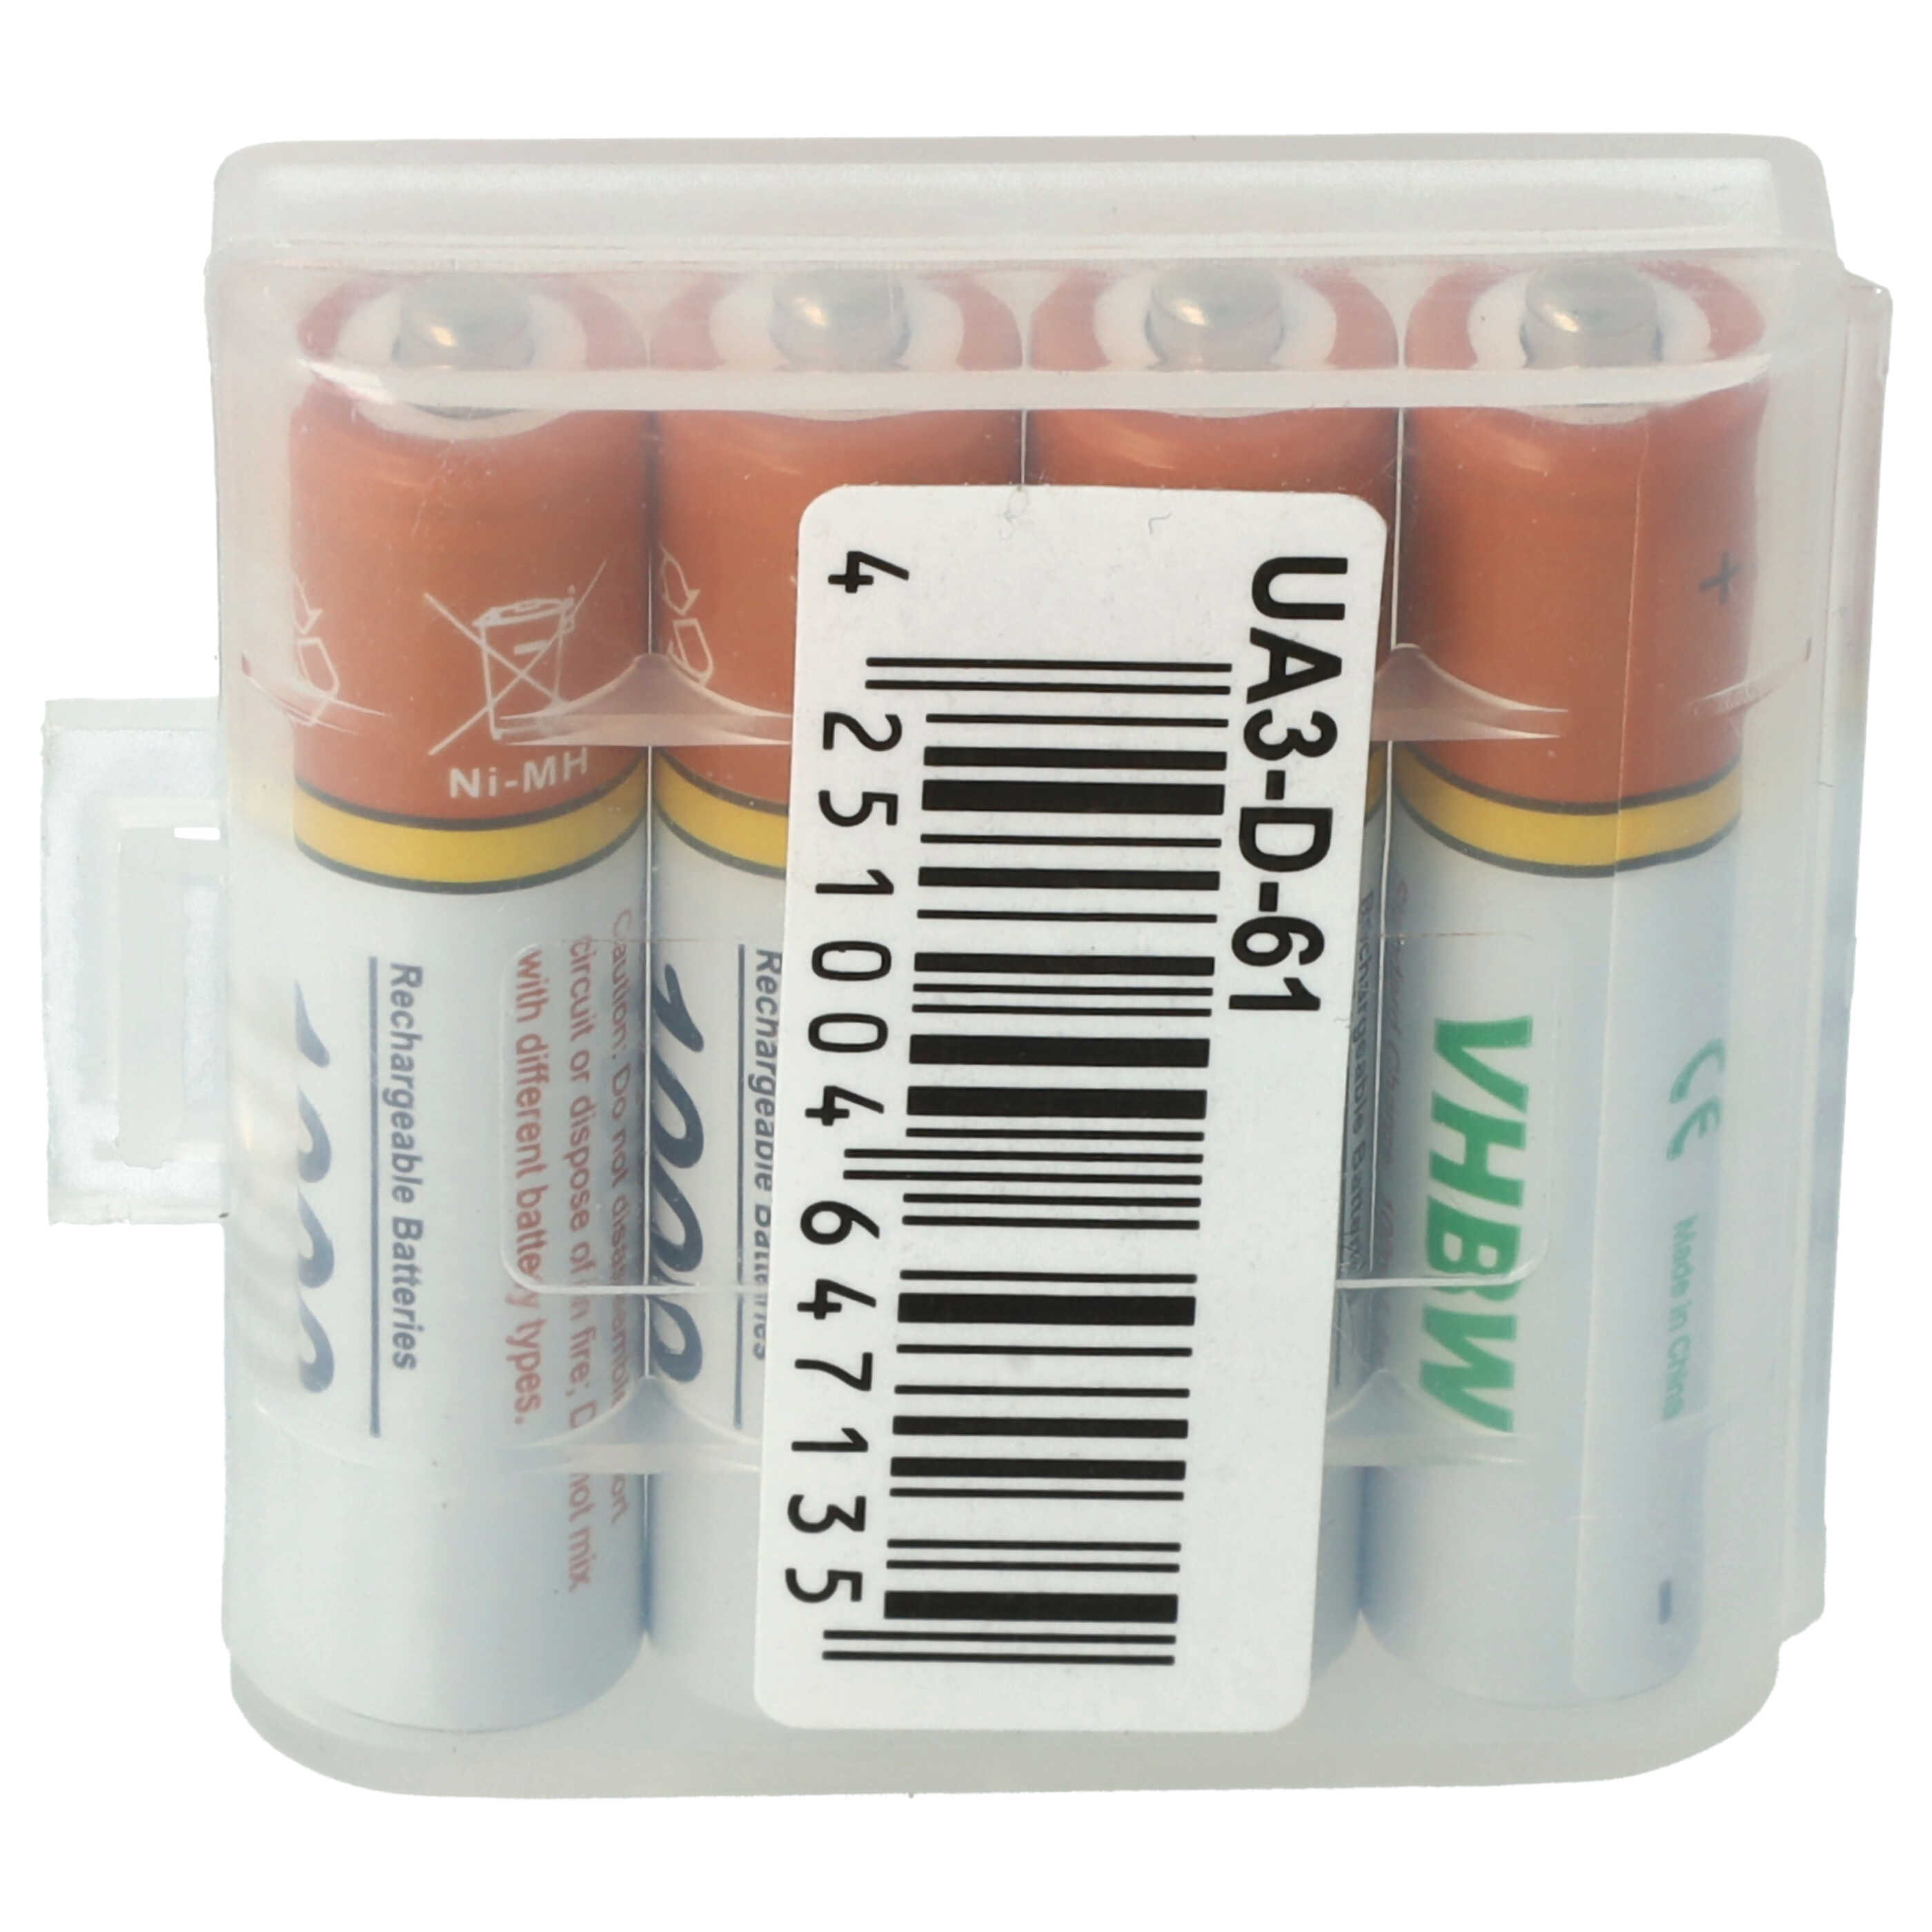 Batteries (4x pièces) pour Philips D4501, D6351, M3351, M3451, M3451B/38 Linea Lux, M5651, M6651, M6651WB Luce